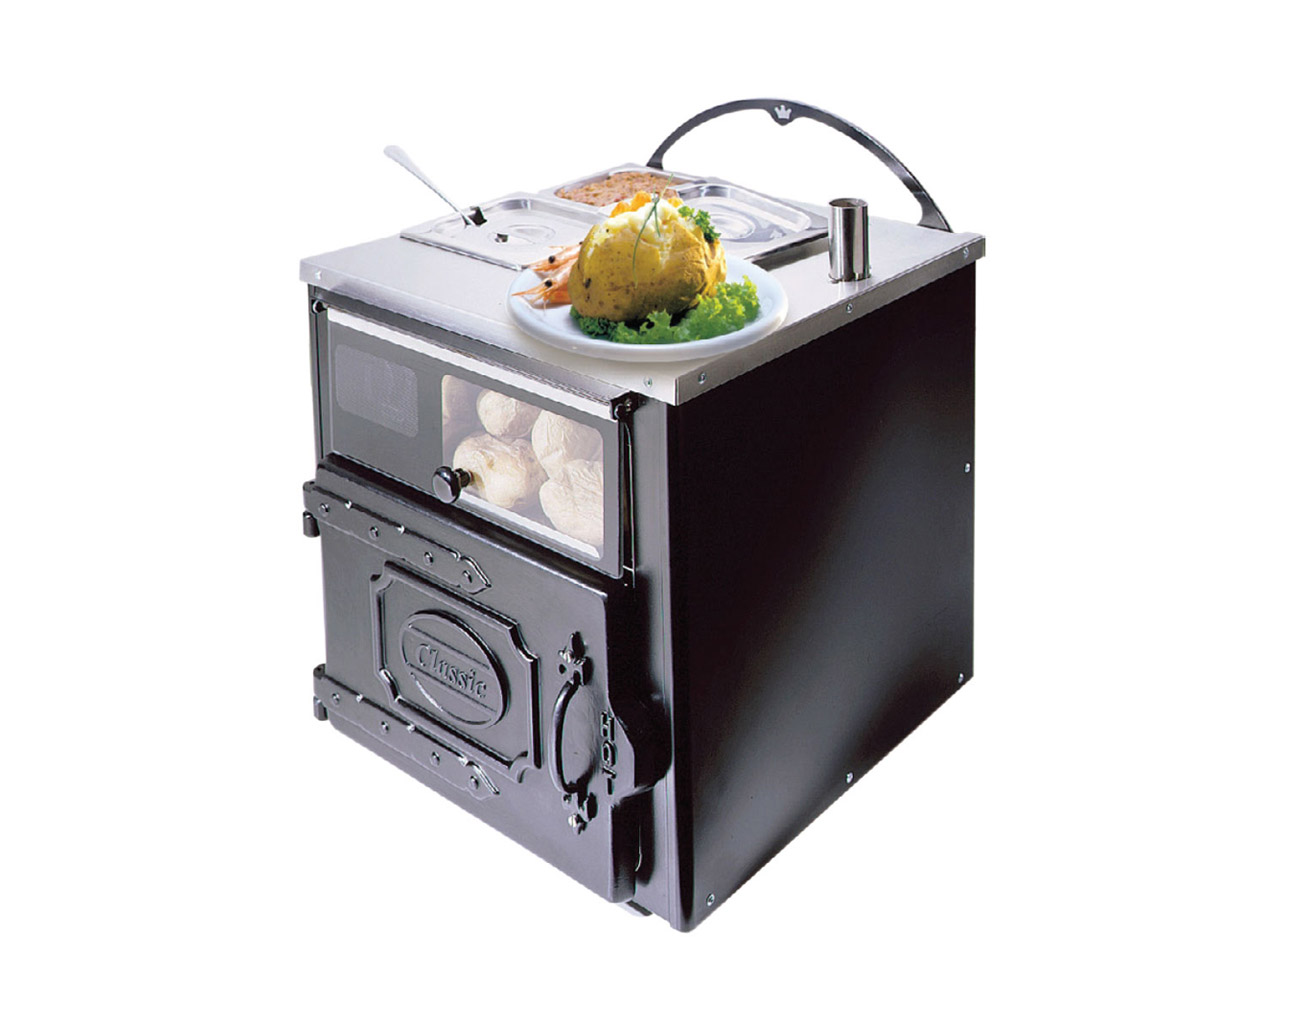 CLASSIC COMPACT 5003 potato oven